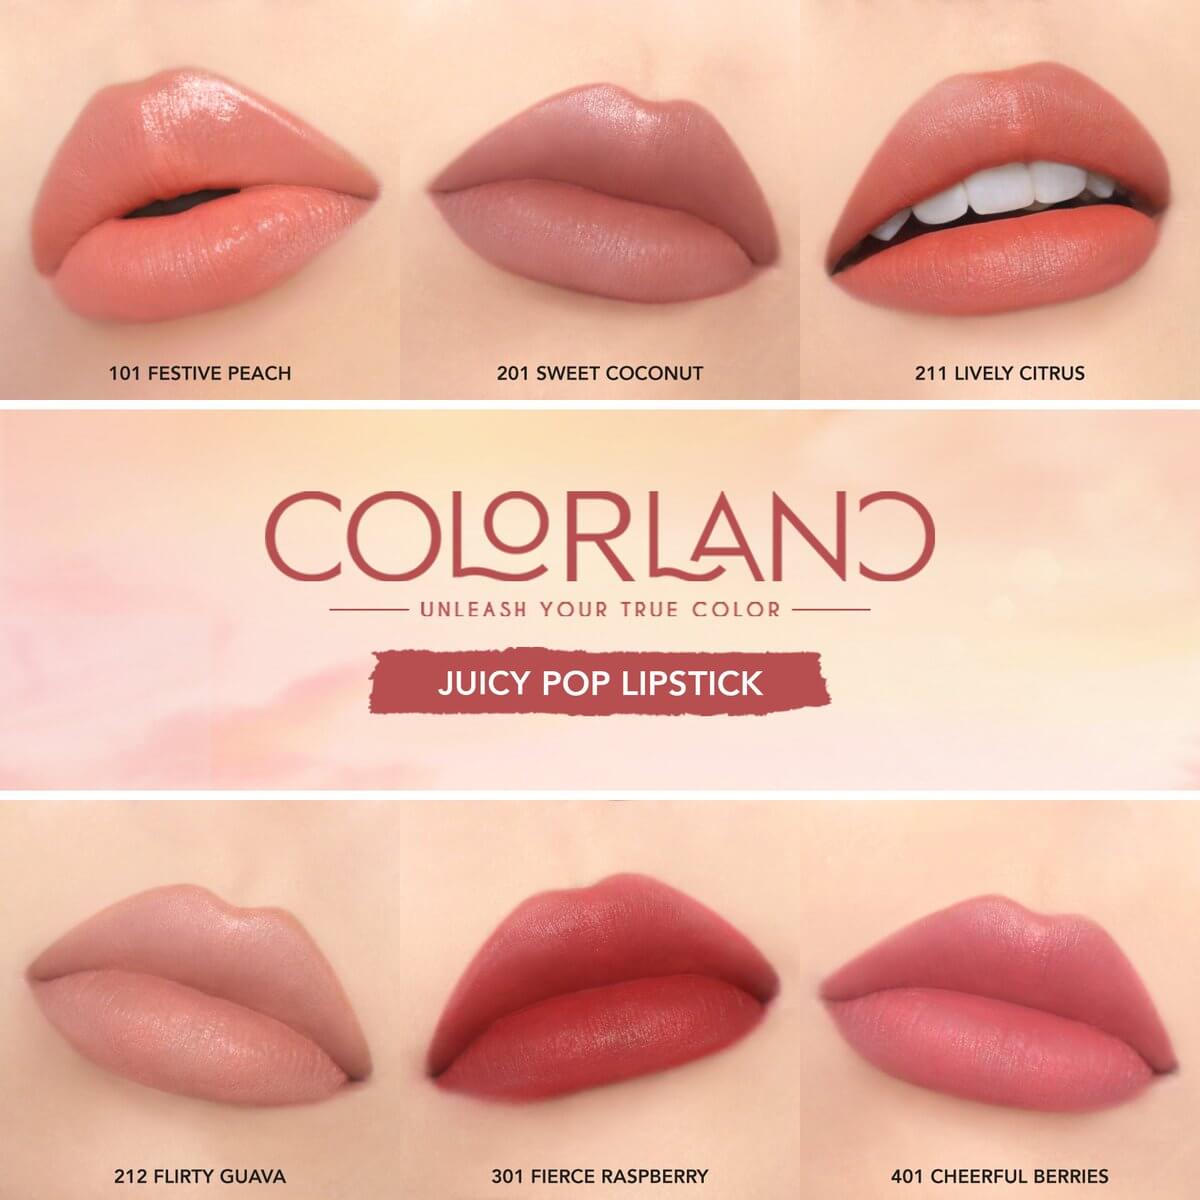  Y.O.U Colorland Juicy Pop Lipstick 